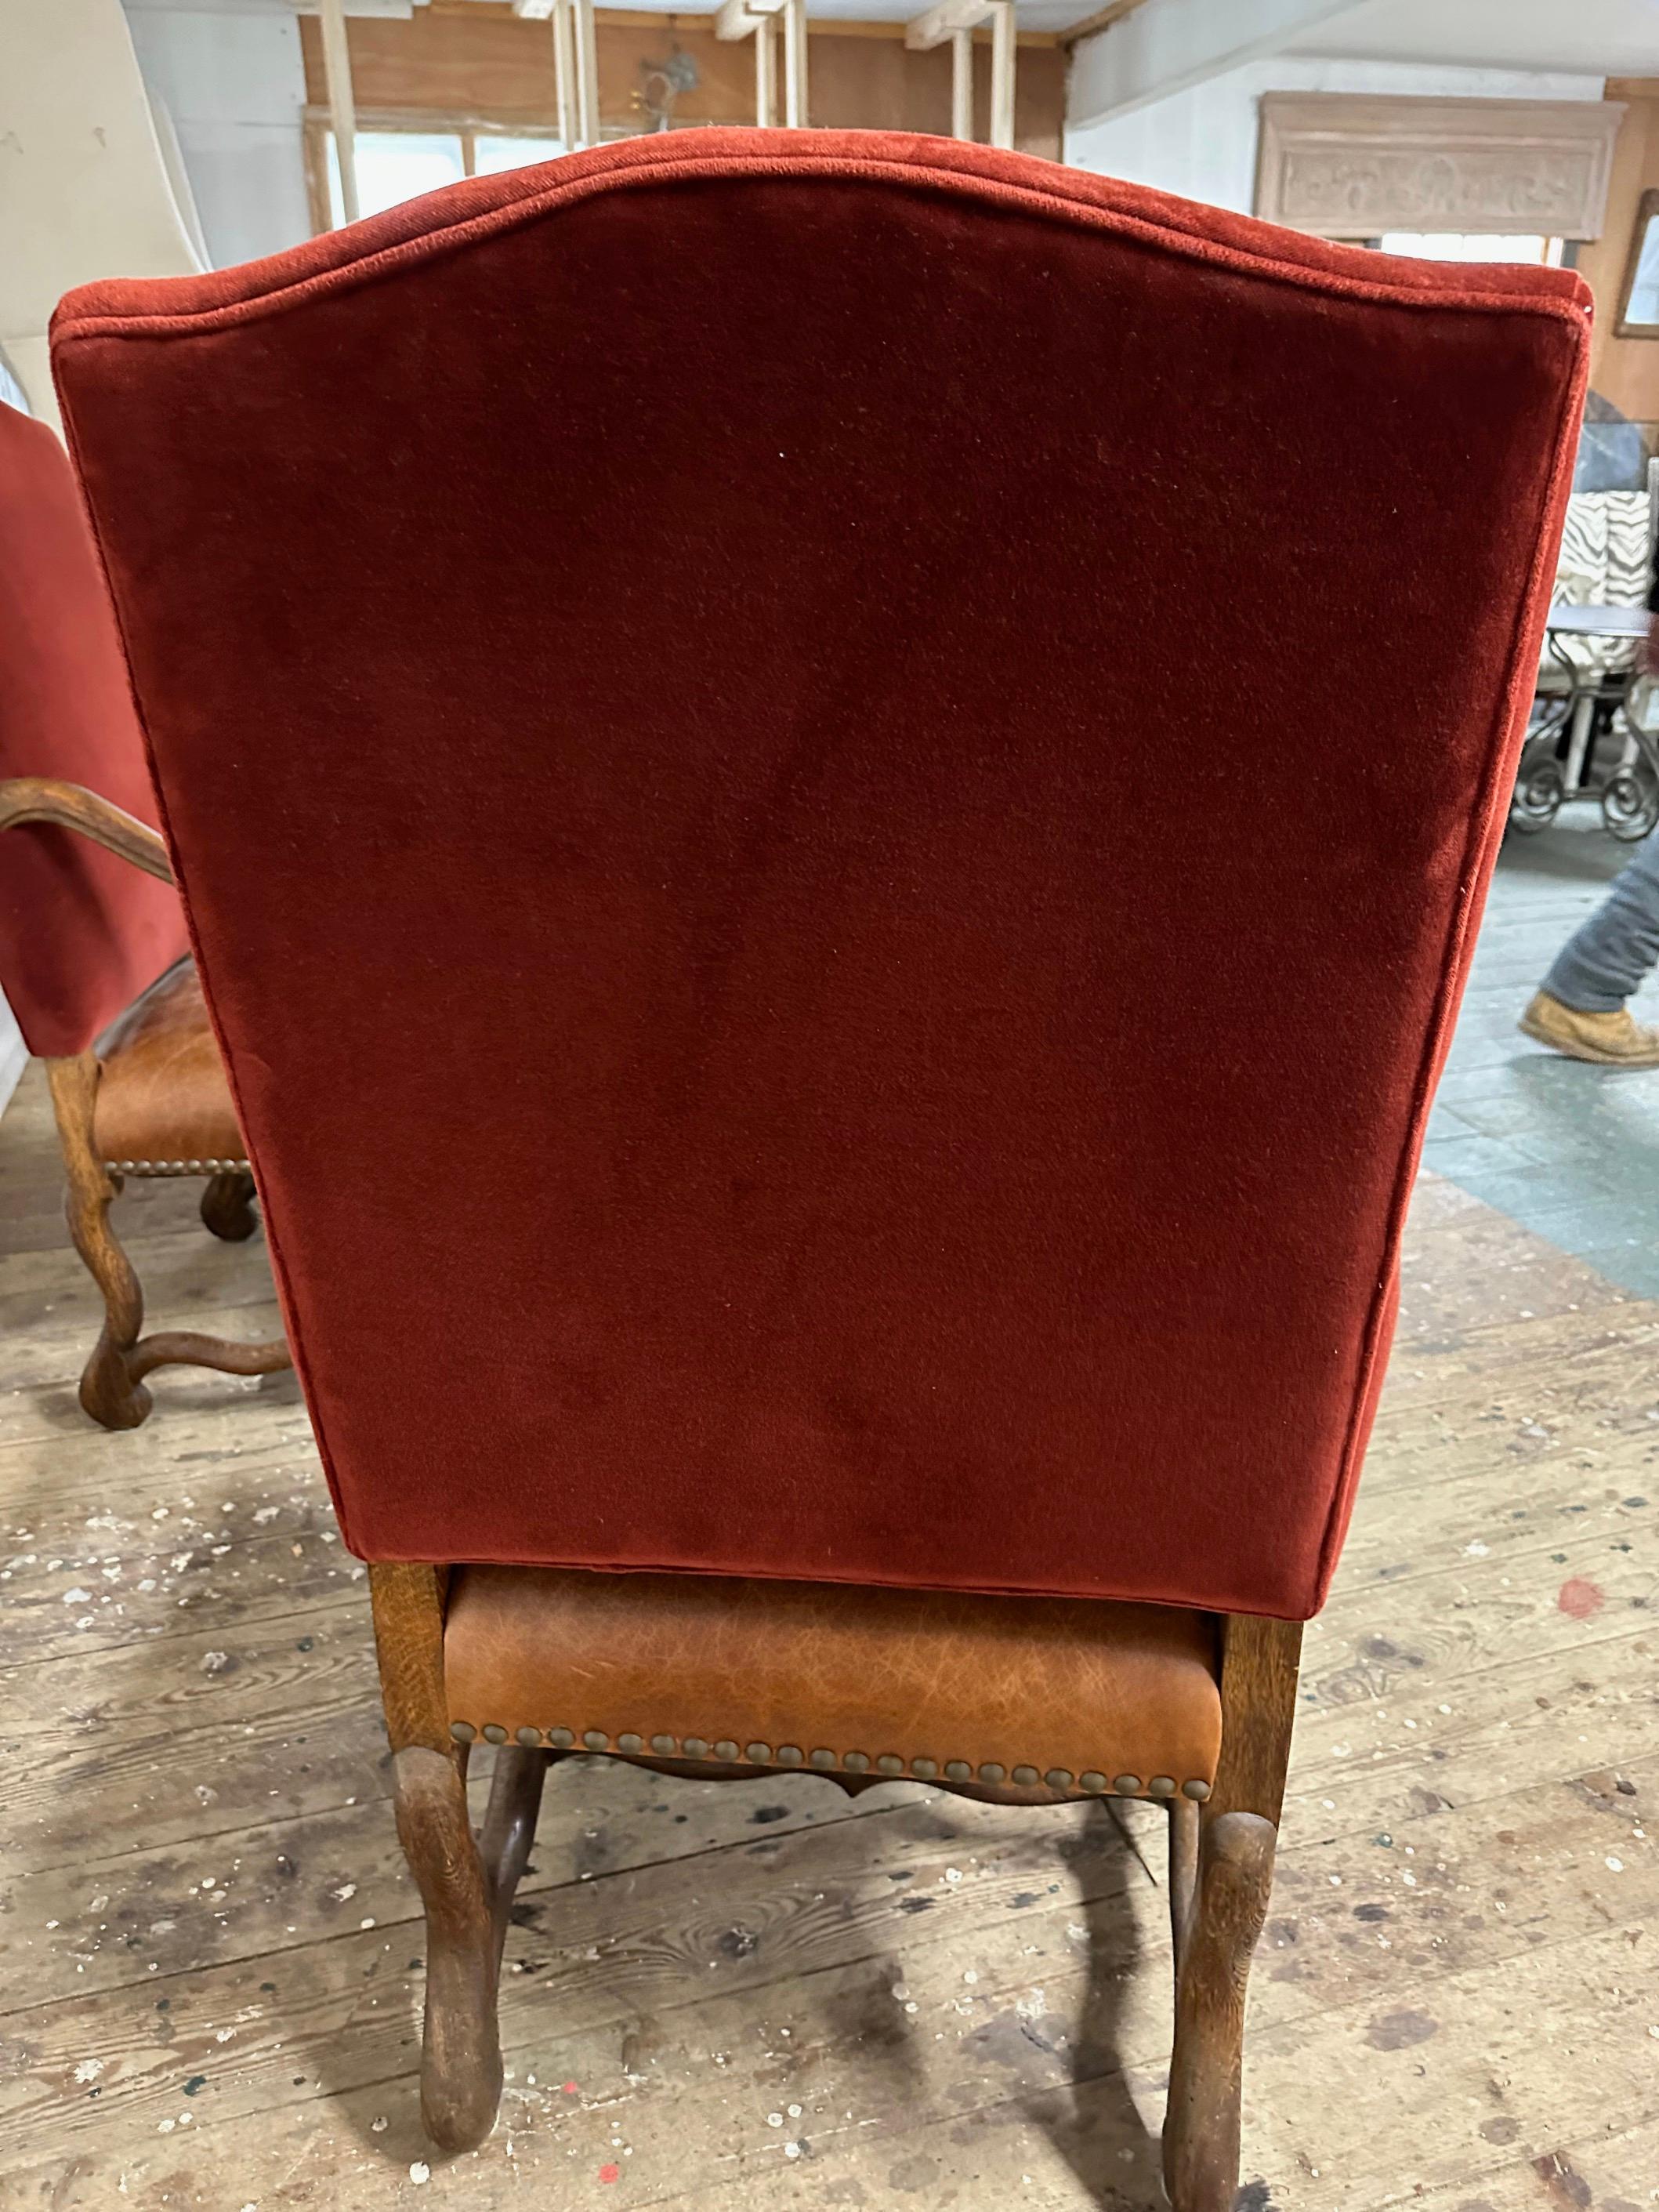 Beau et généreux fauteuil provincial français de style Louis XIII en forme d'Os de Mouton (corne de mouton) avec dos de chameau incliné, un style populaire pendant plus de 200 ans.  Les chaises ont des pieds à volutes reliés par des brancards. 2